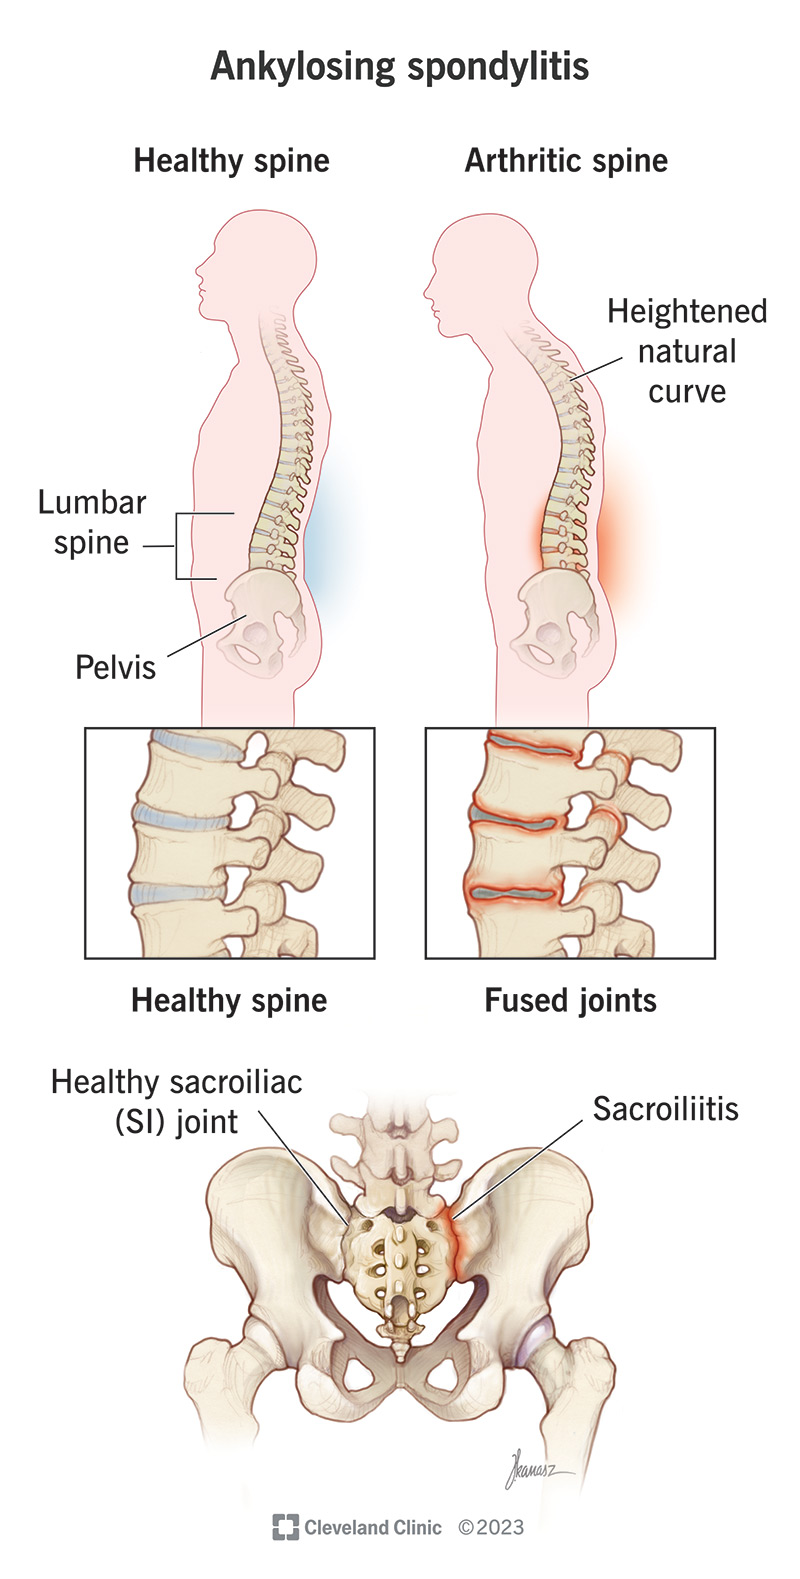 La spondilite anchilosante di solito colpisce le articolazioni sacroiliache (dove la base della colonna vertebrale incontra il bacino).